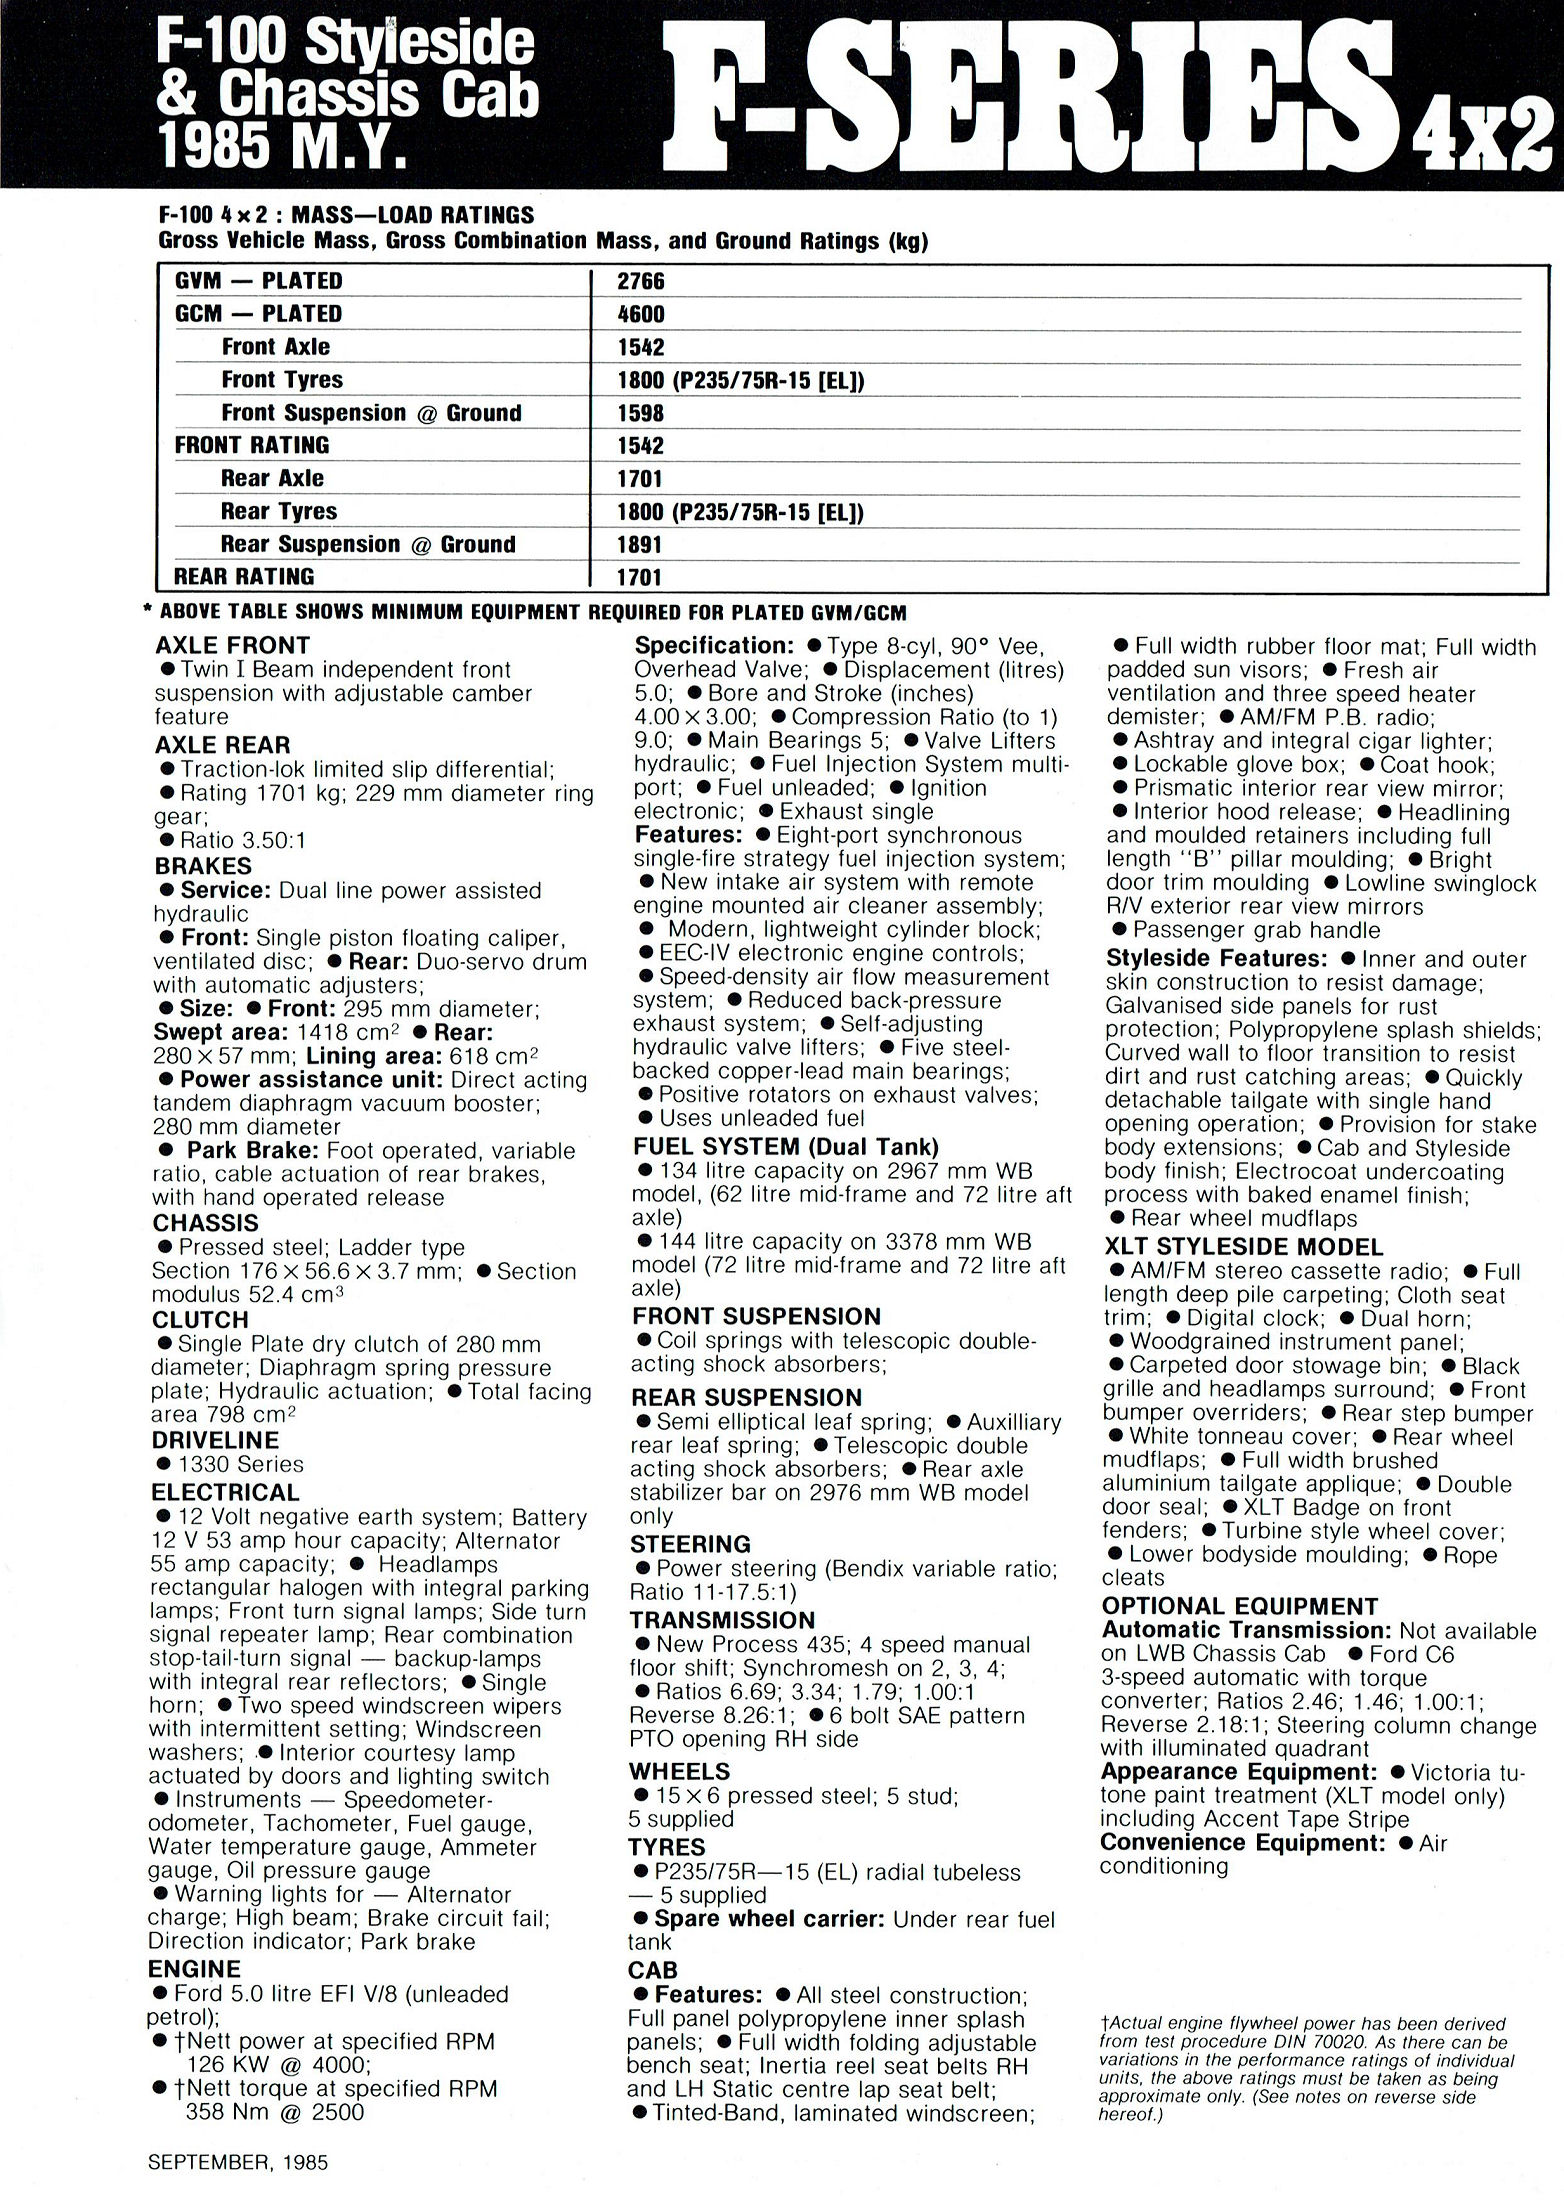 1985 Ford Truck Data Sheet (Aus)-04